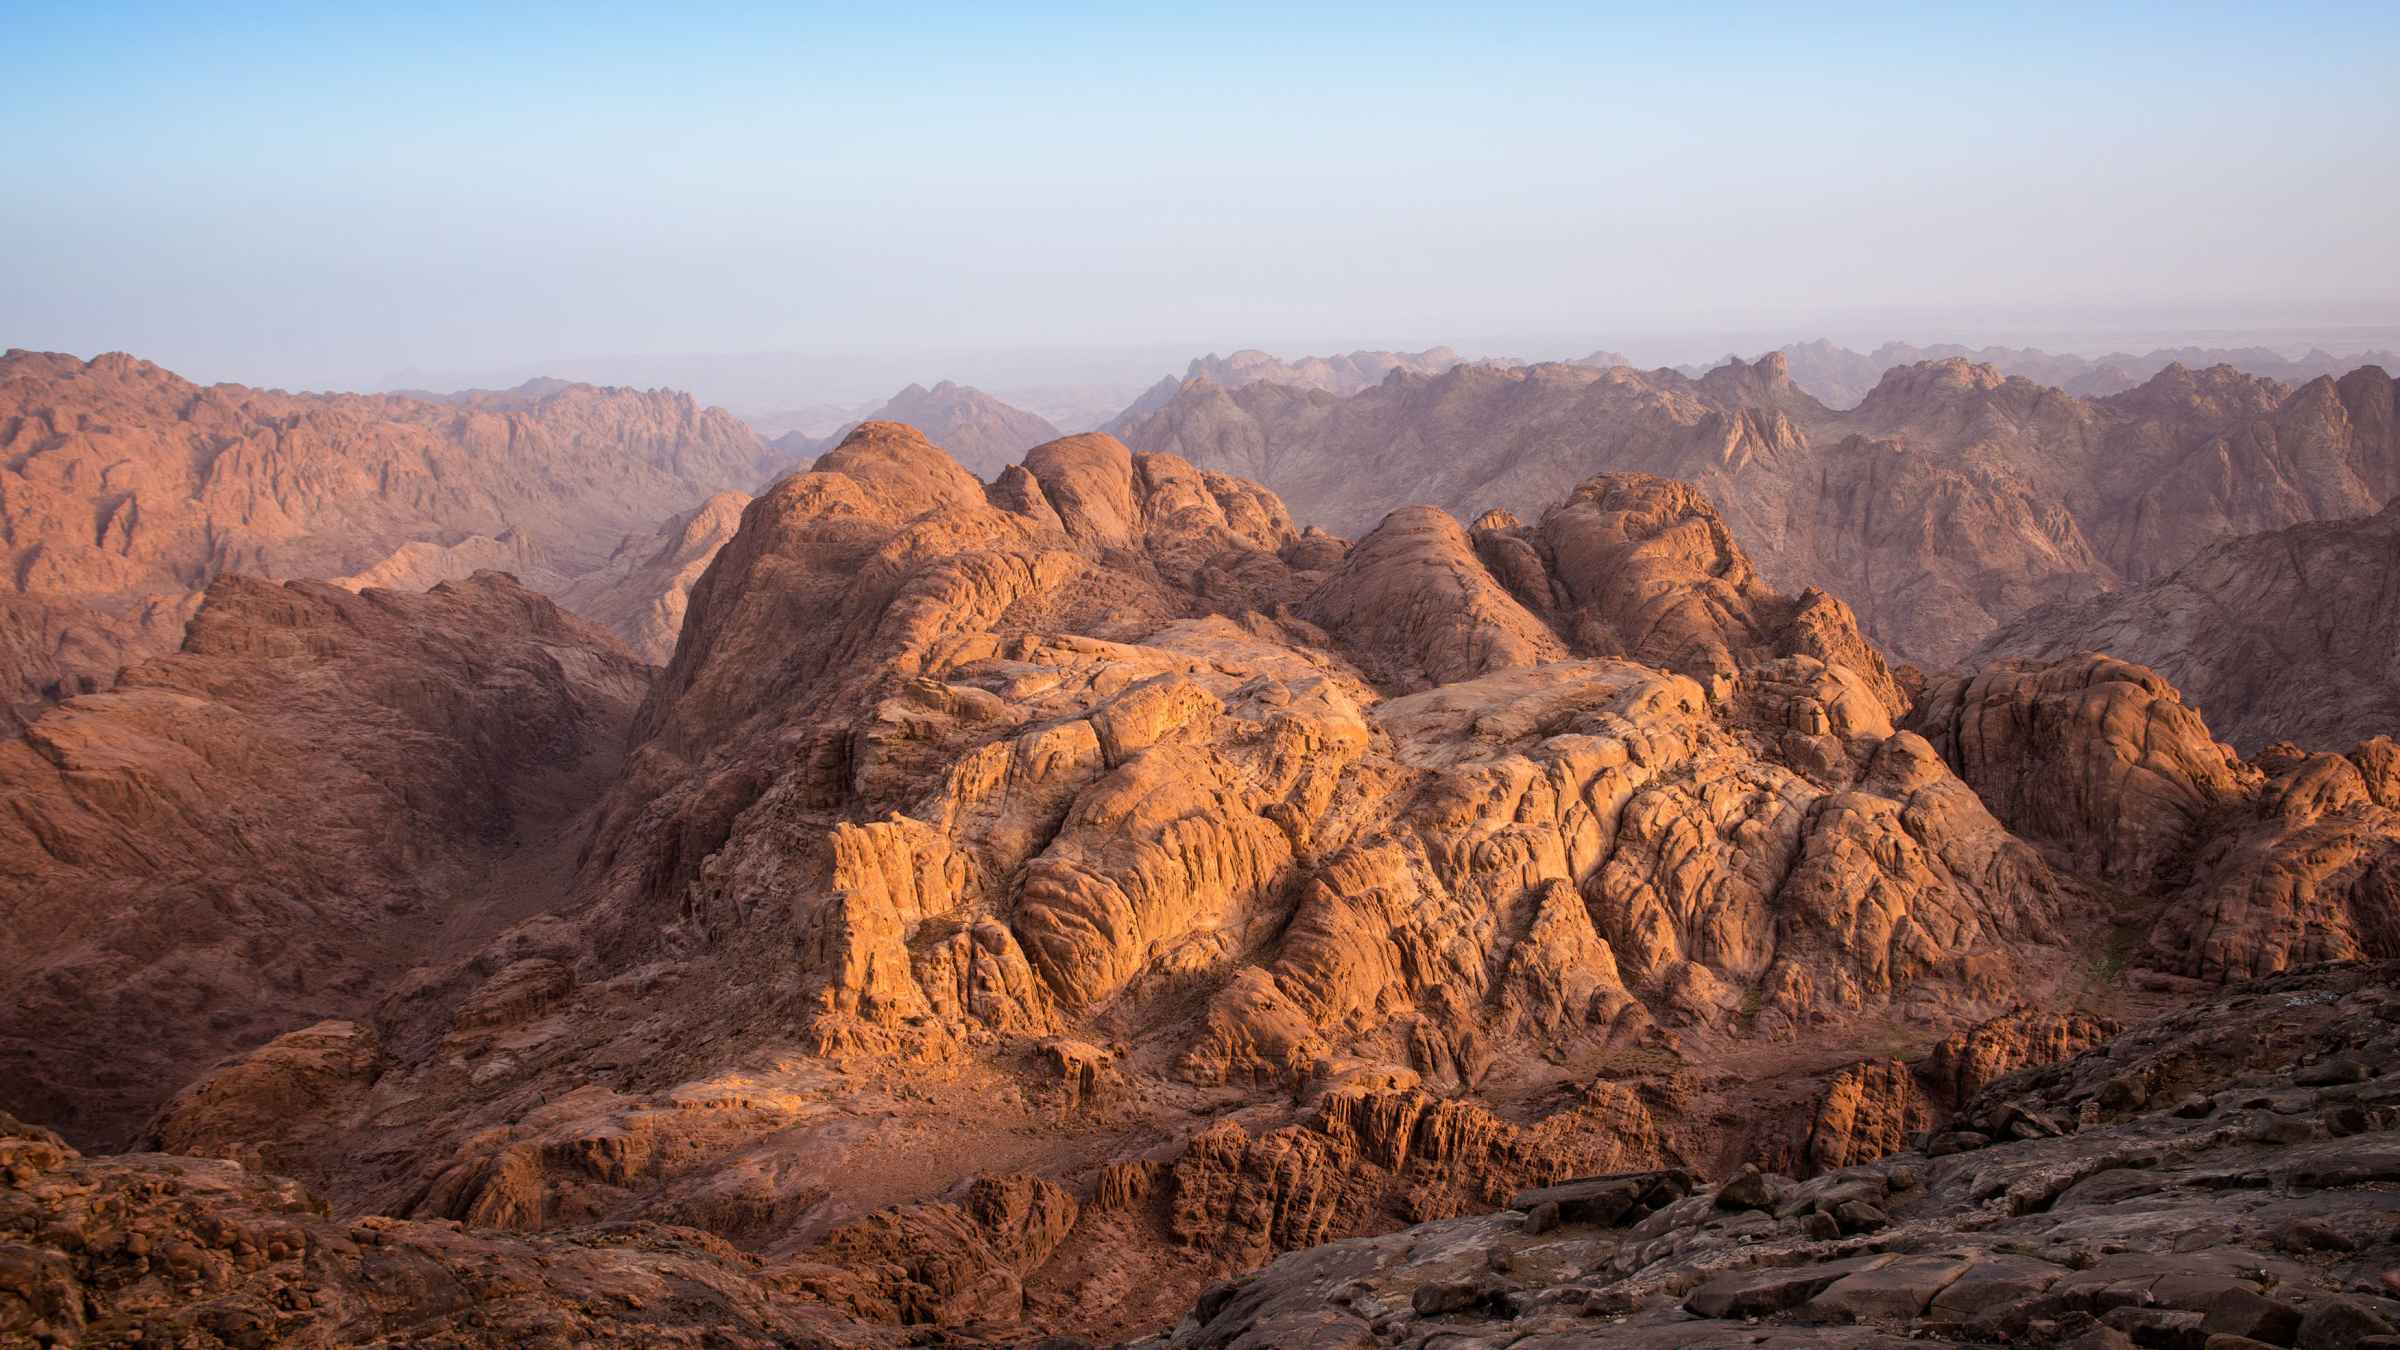 BESTE UNESCO-Sehenswürdigkeiten Berg Sinai 2022 – KOSTENLOS stornierbar